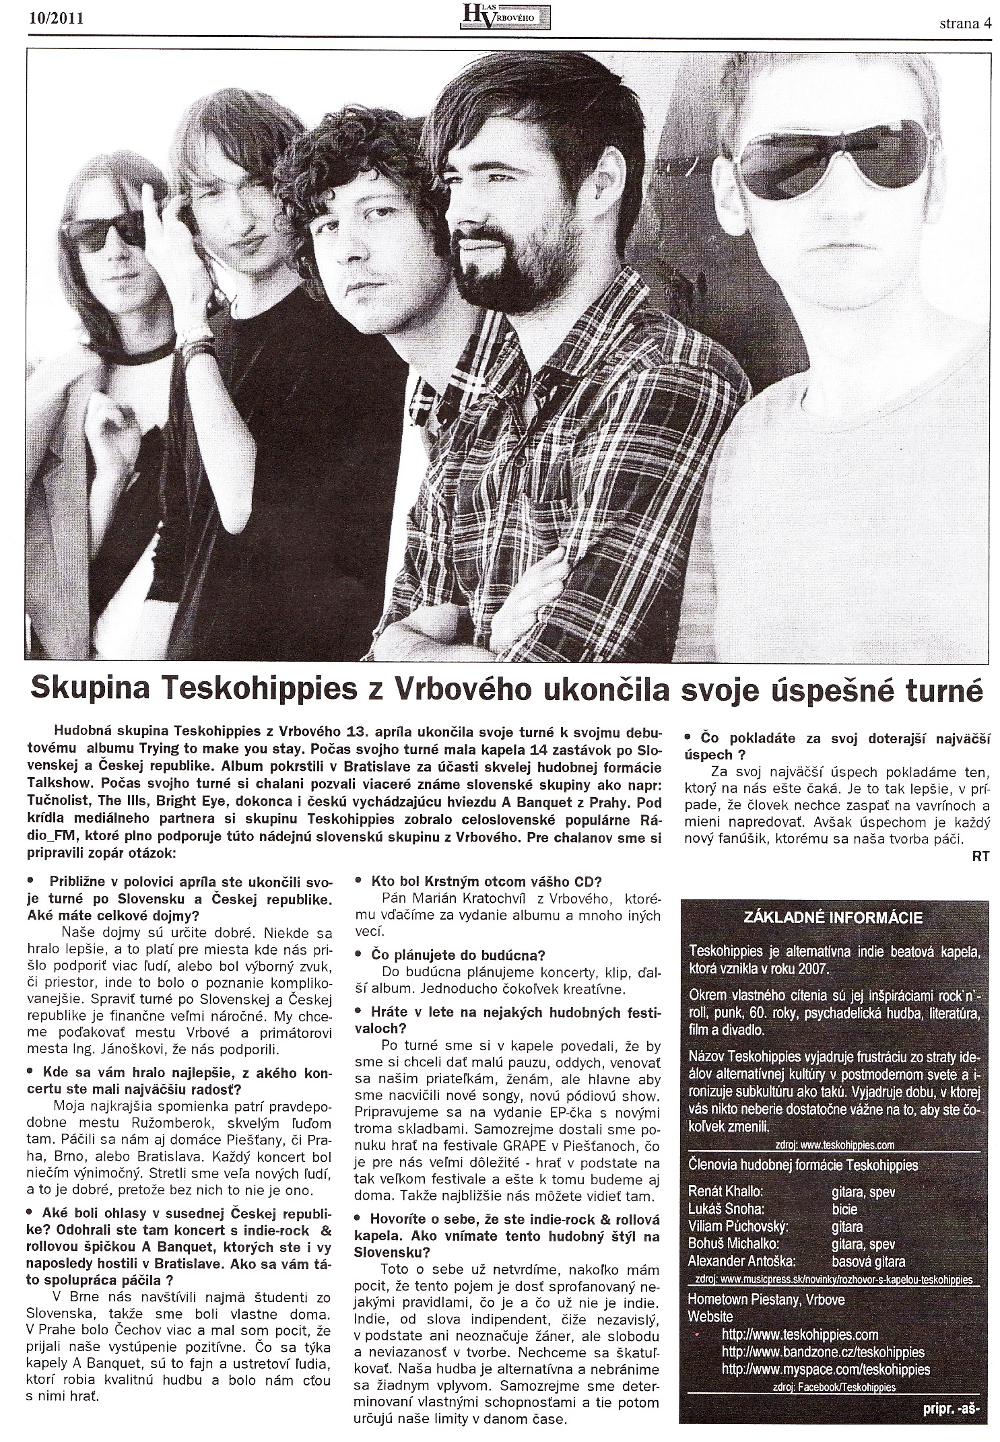 Hlas Vrbového 10/2011, strana 4